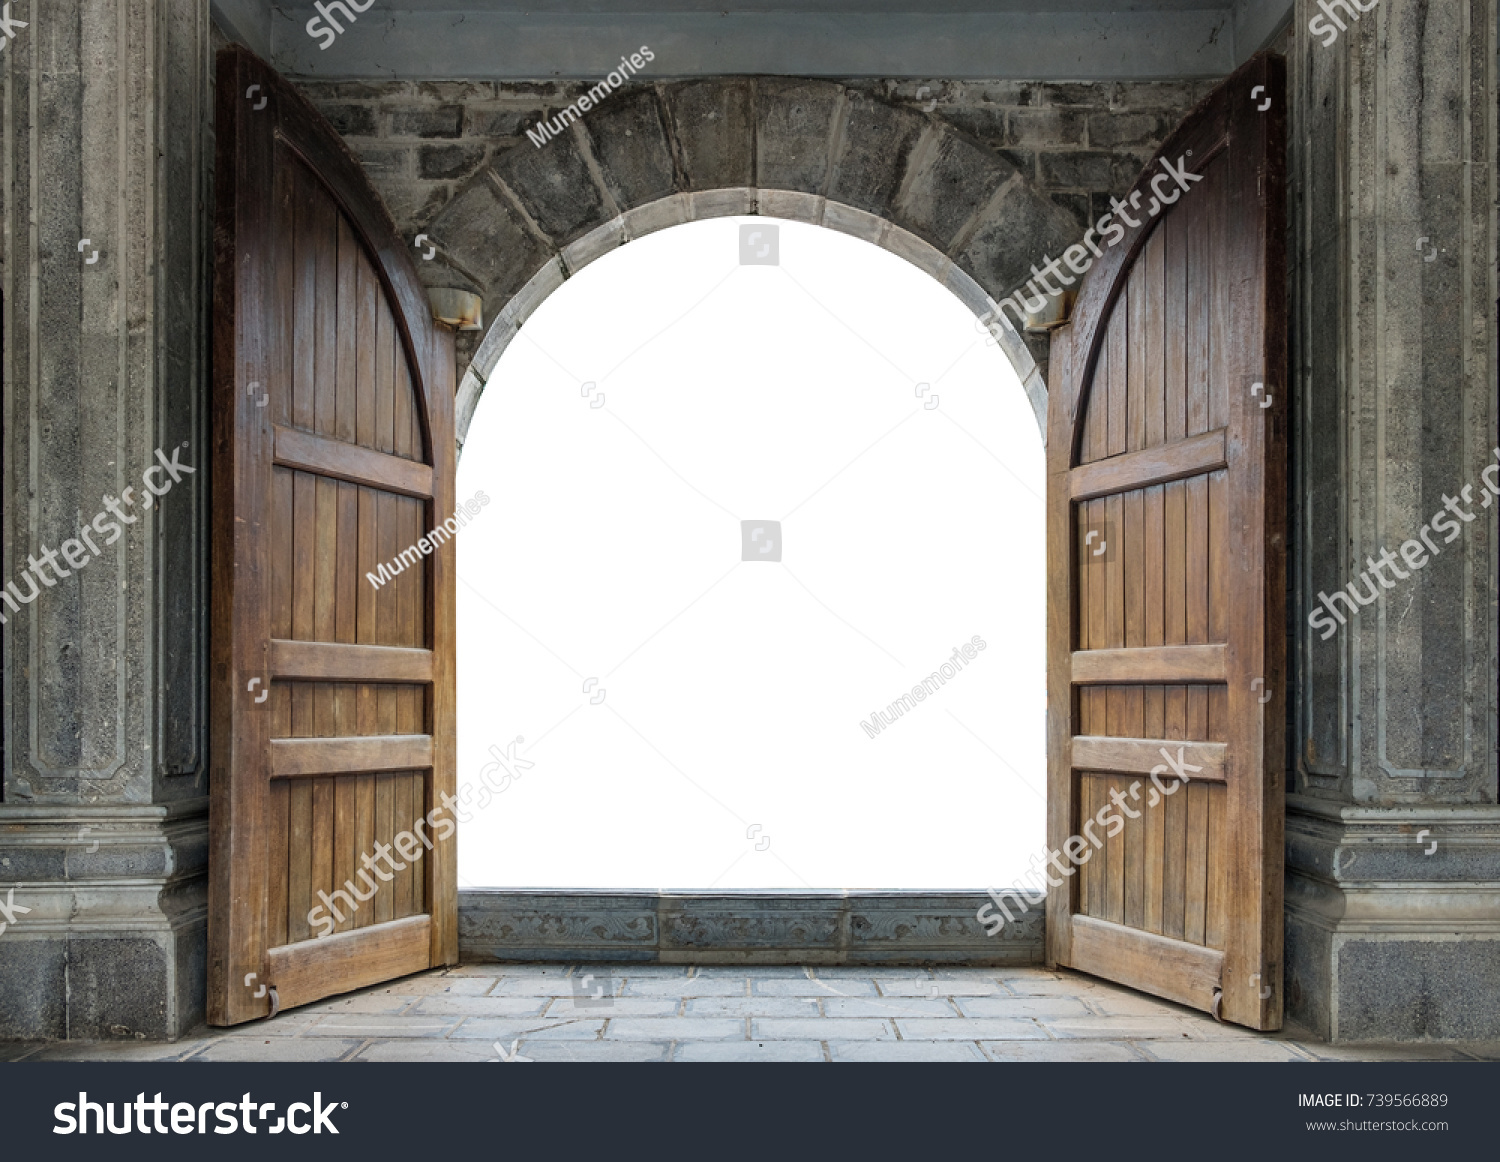 Large wooden door open in rock castle wall #739566889